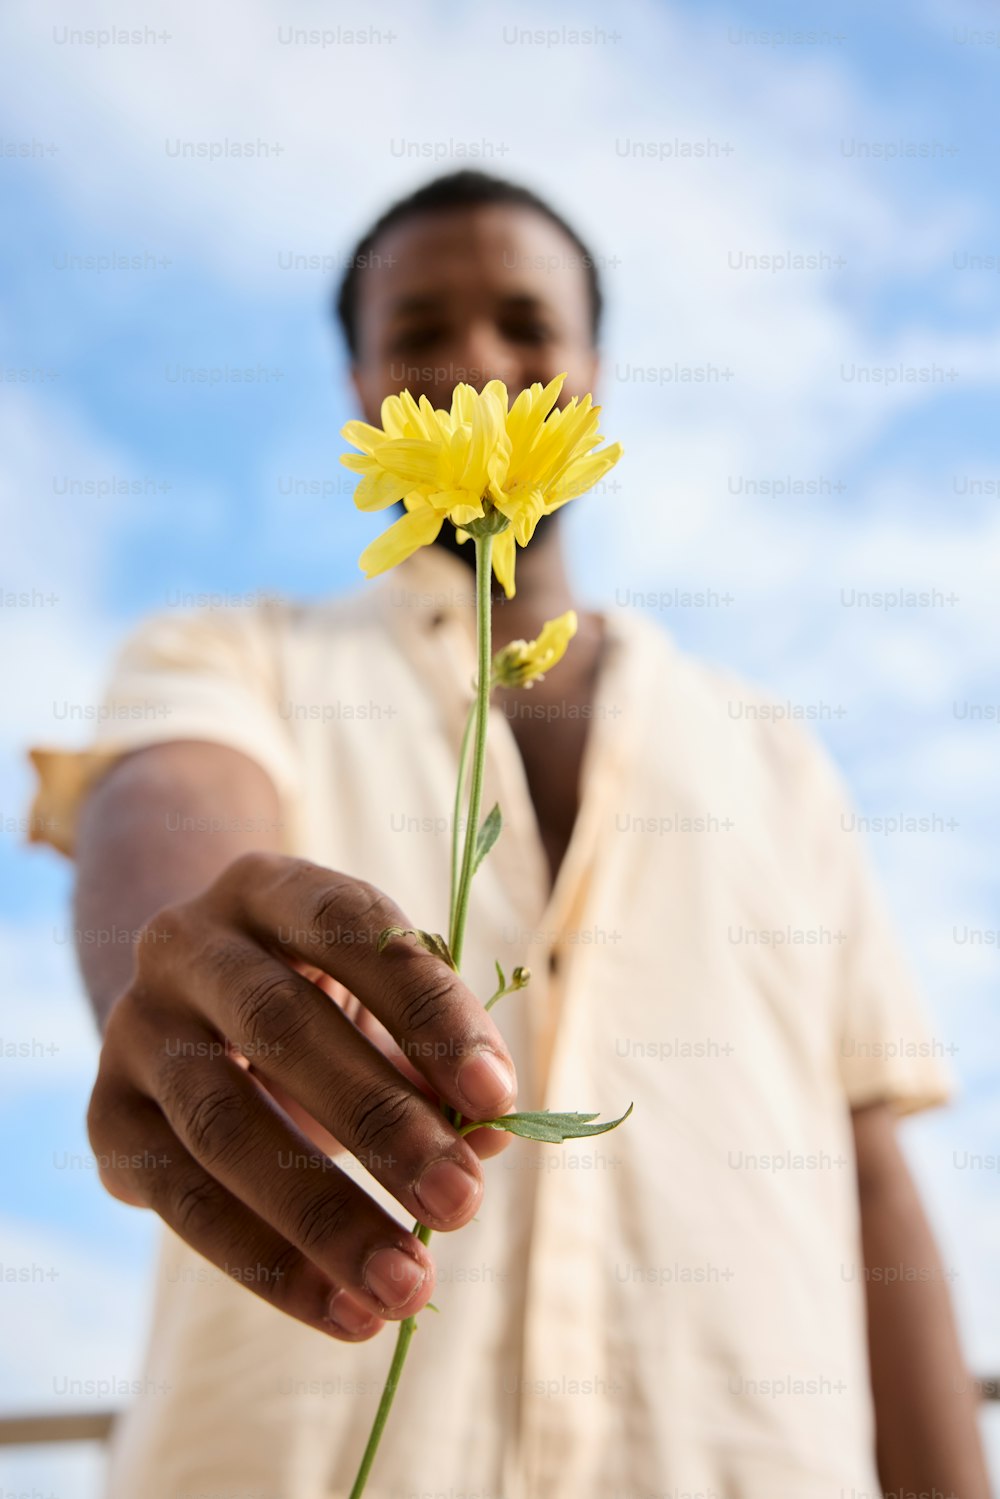 un hombre sosteniendo una flor amarilla en su mano